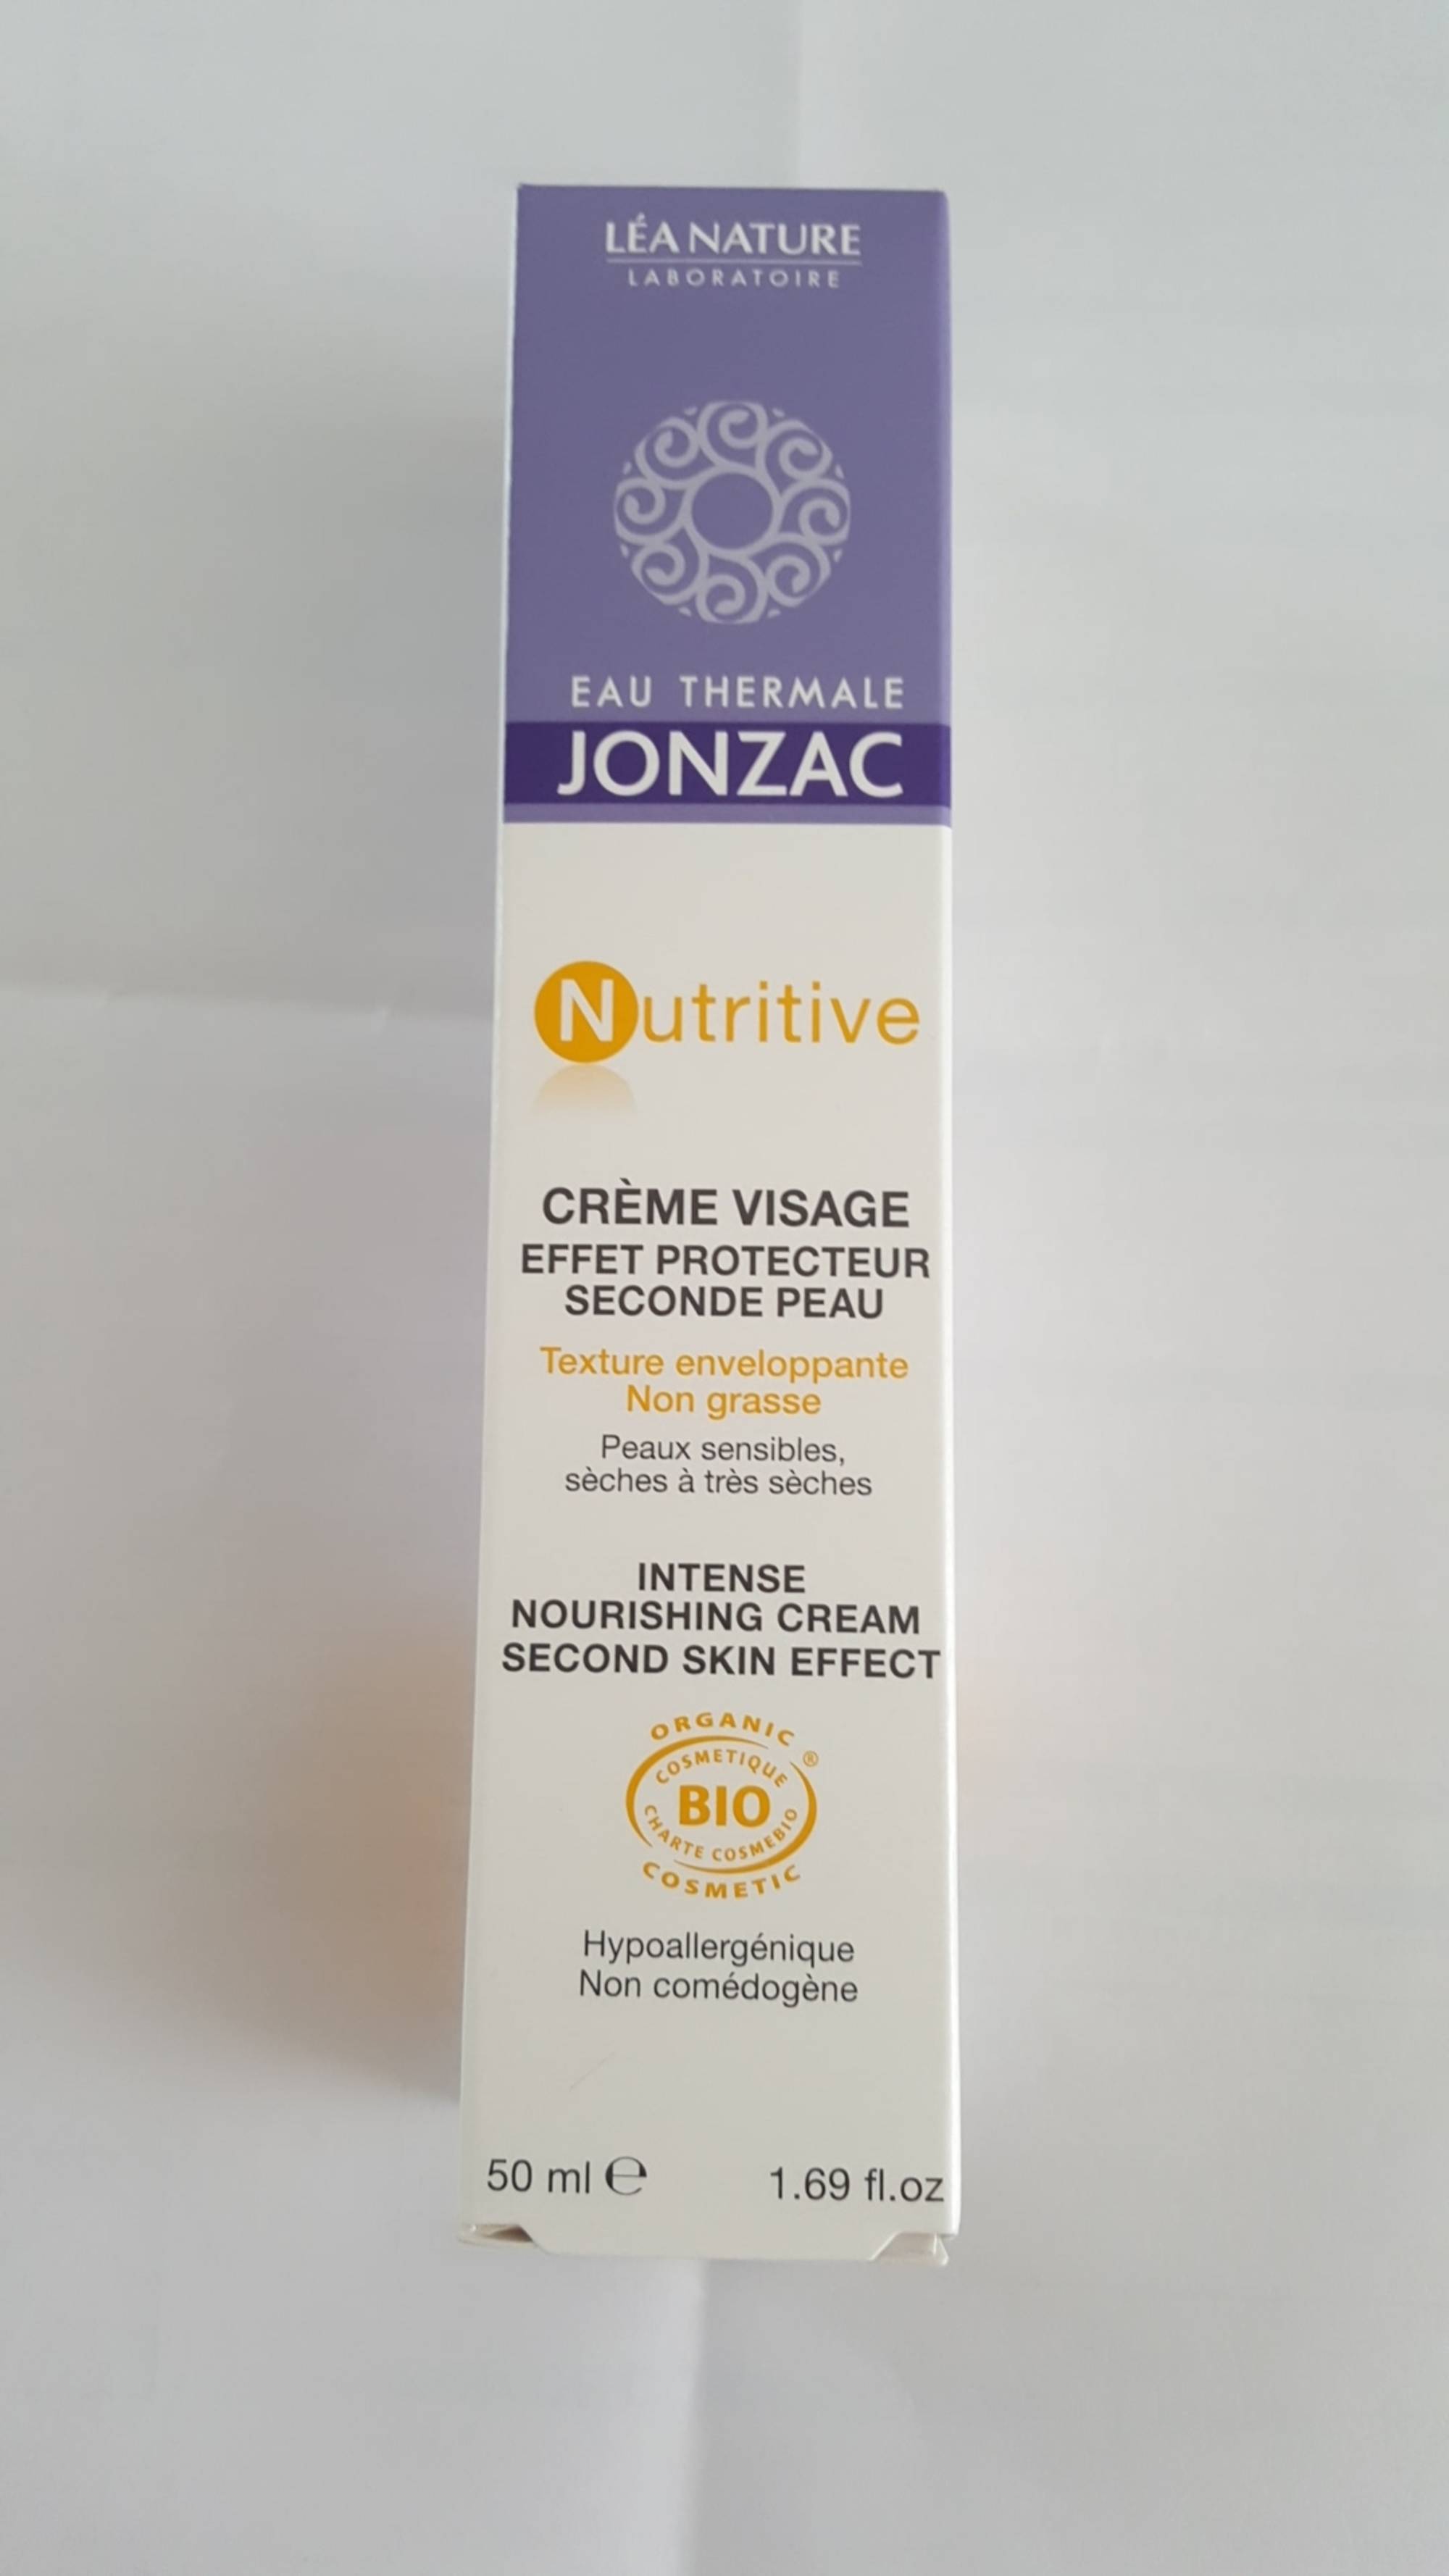 EAU THERMALE JONZAC - Nutritive - Crème visage effet protecteur seconde peau